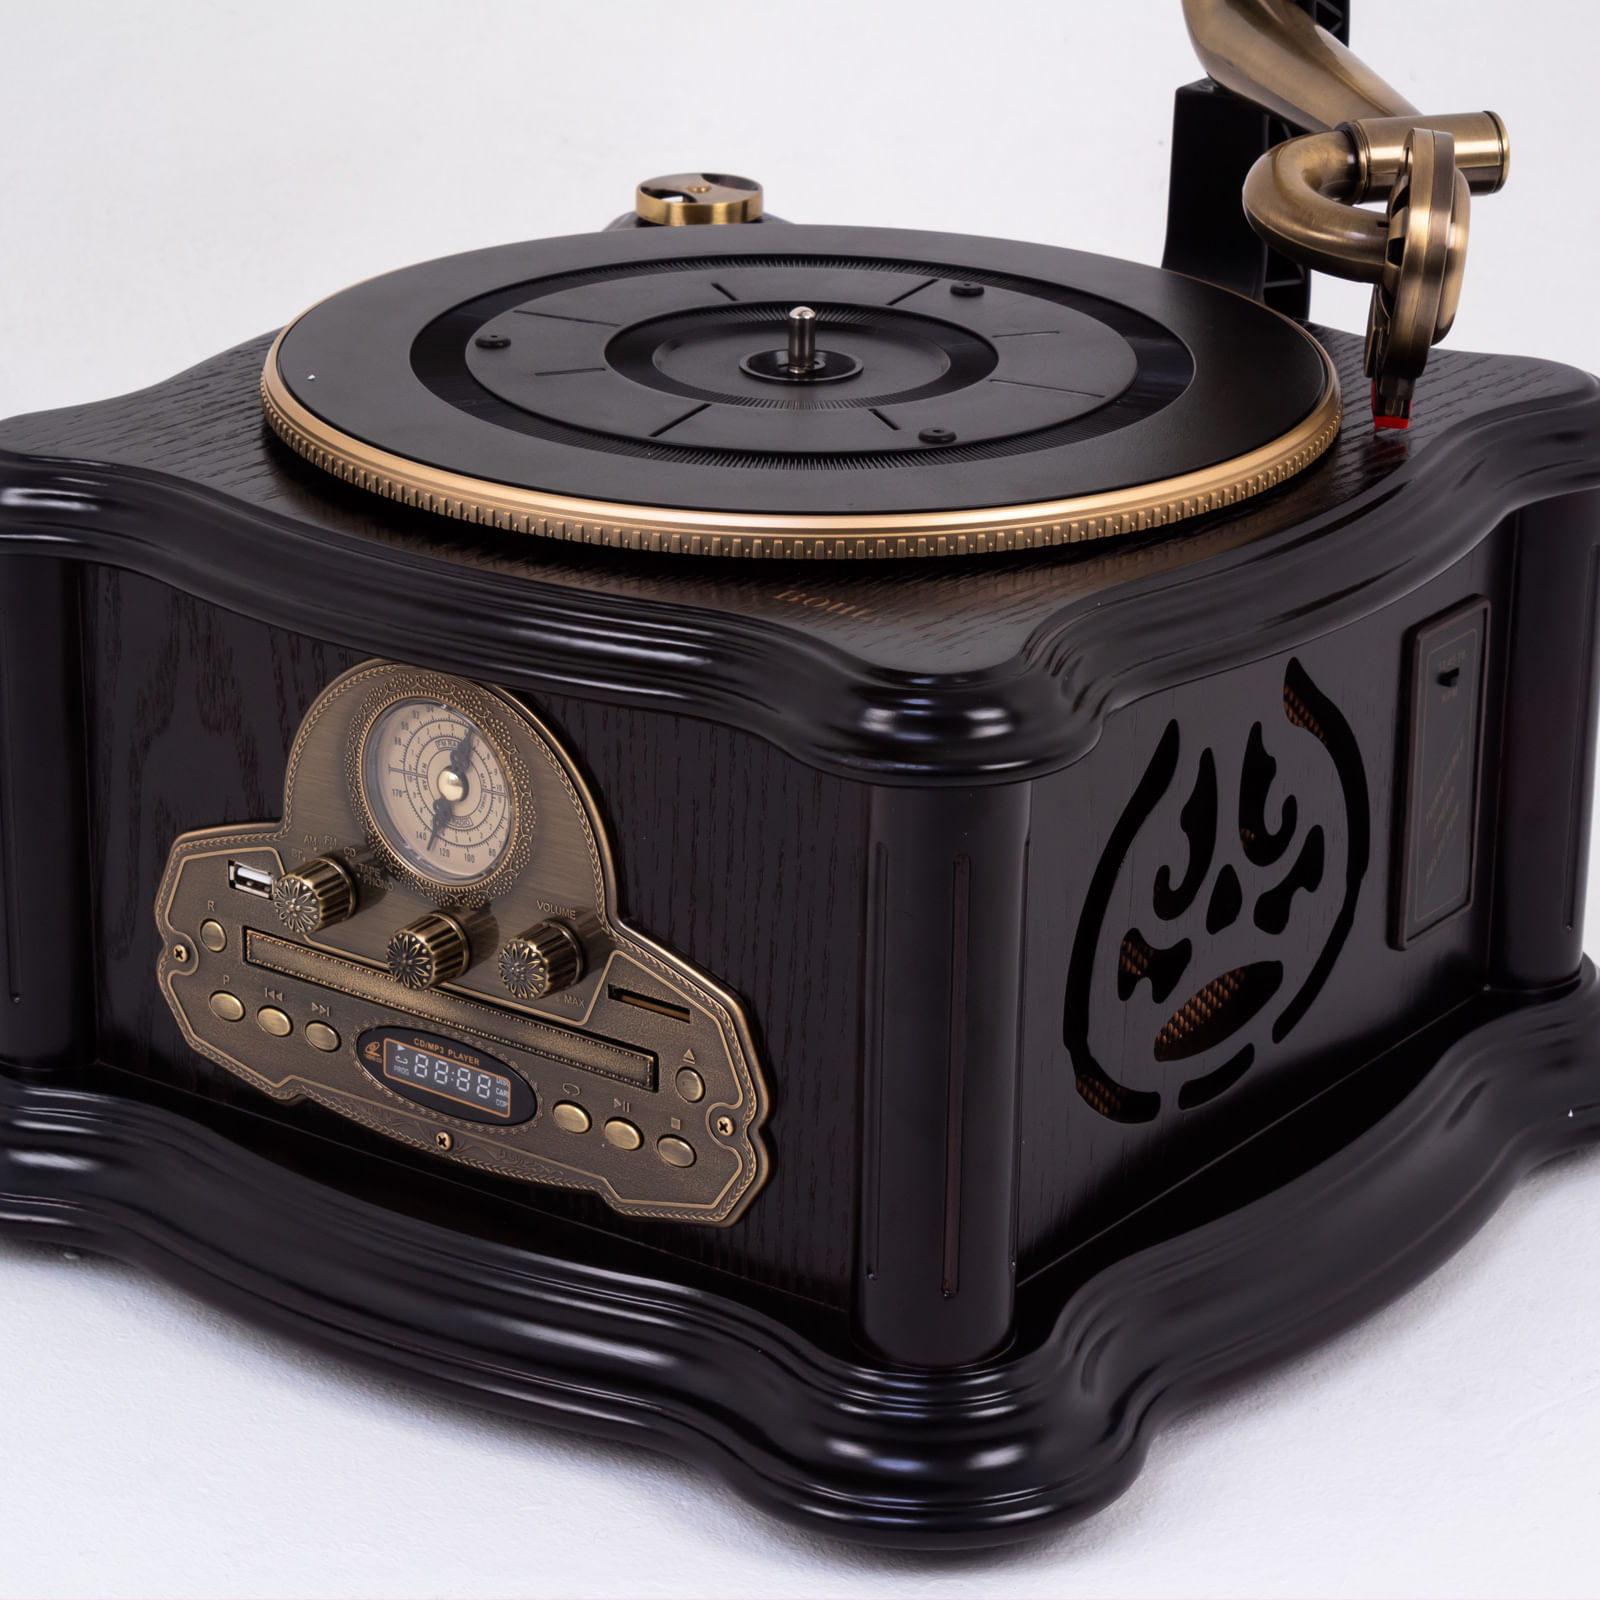 Tocadiscos gramófono con radio y CD, de 4.4 W RMS, café